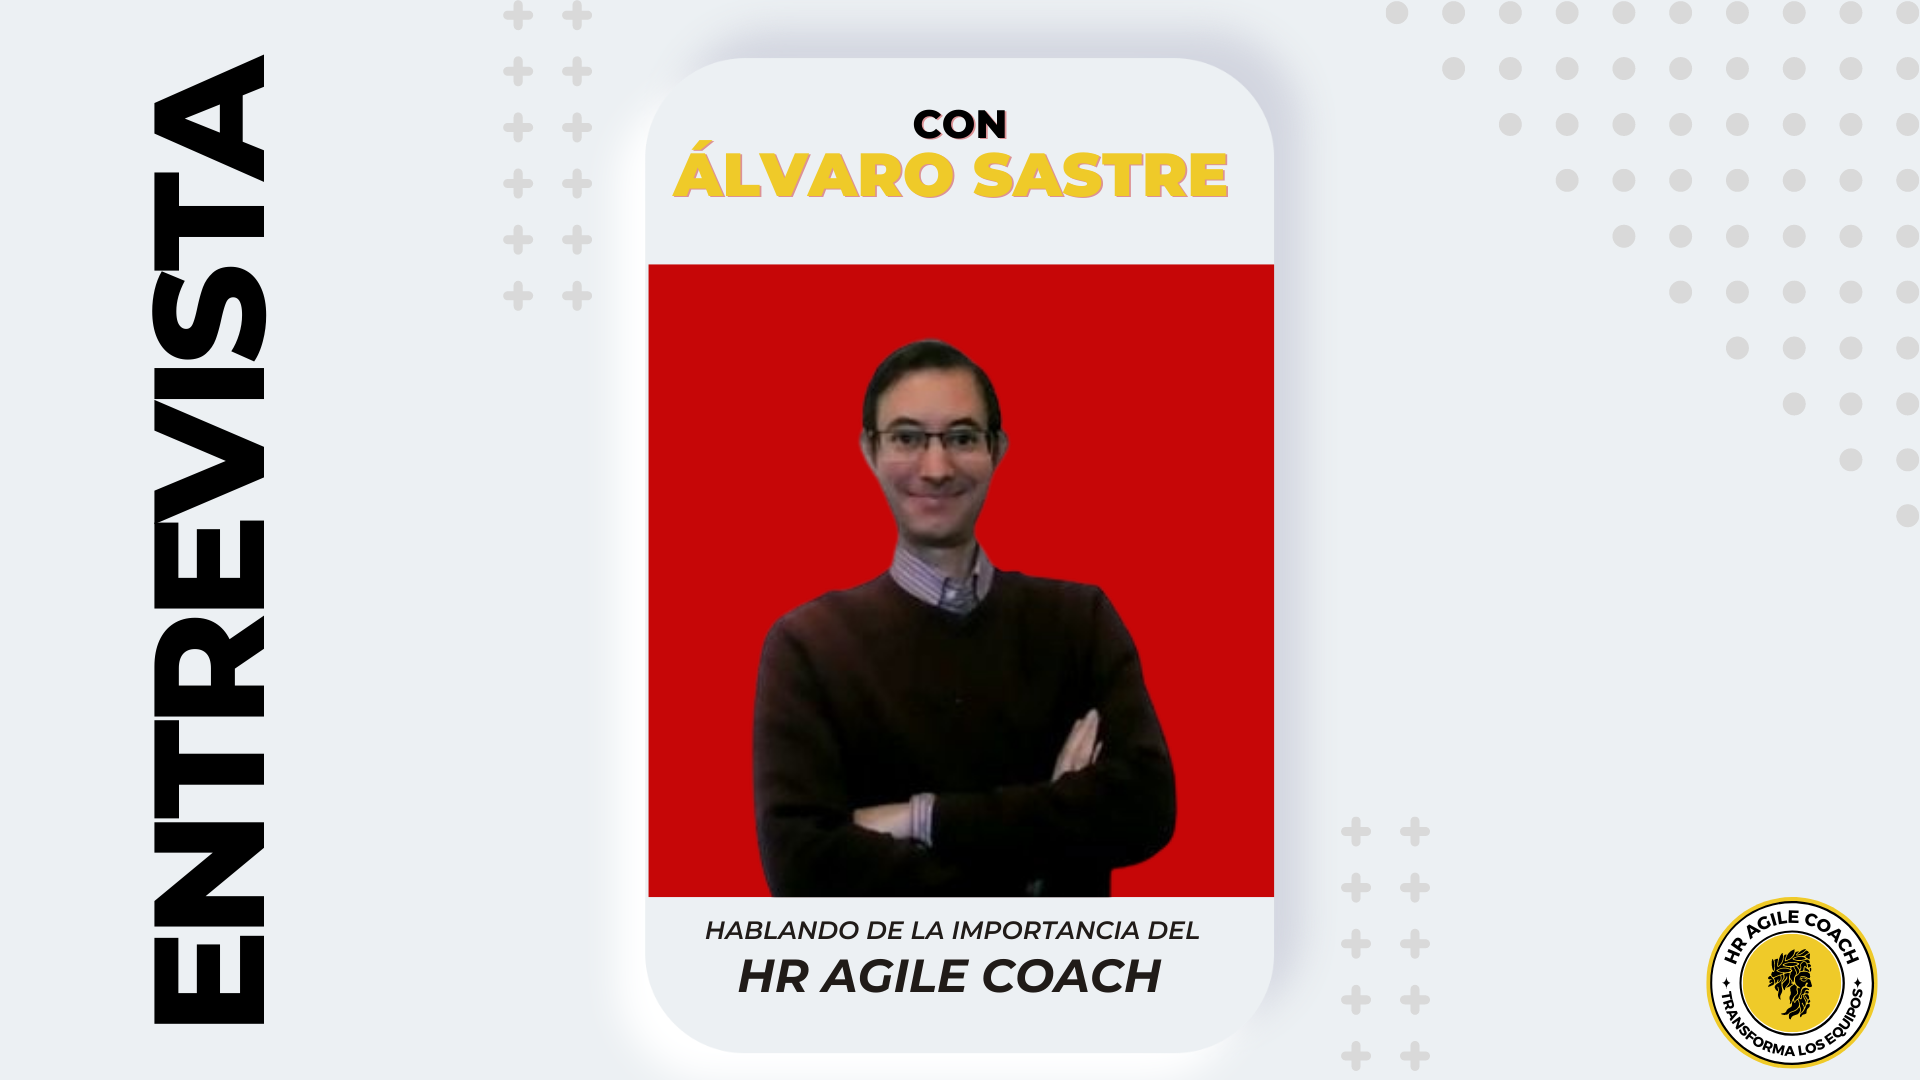 HR Agile Coach un rol profesional Entrevista